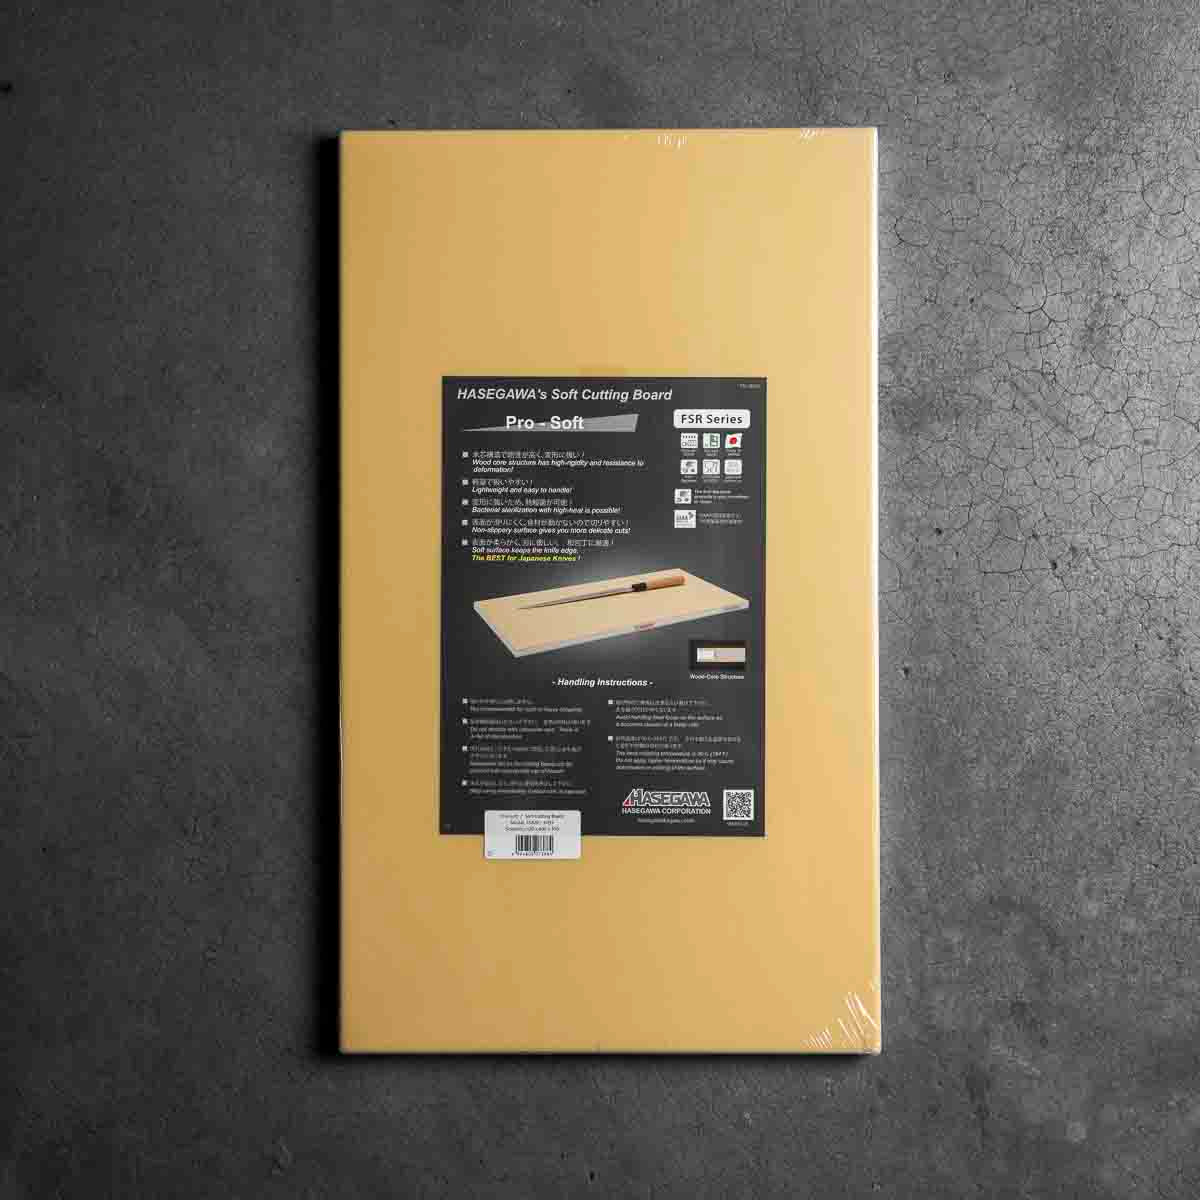 Hasegawa Pro-Soft WoodCore Synthetic Rubber Cutting Board - 500x300x20